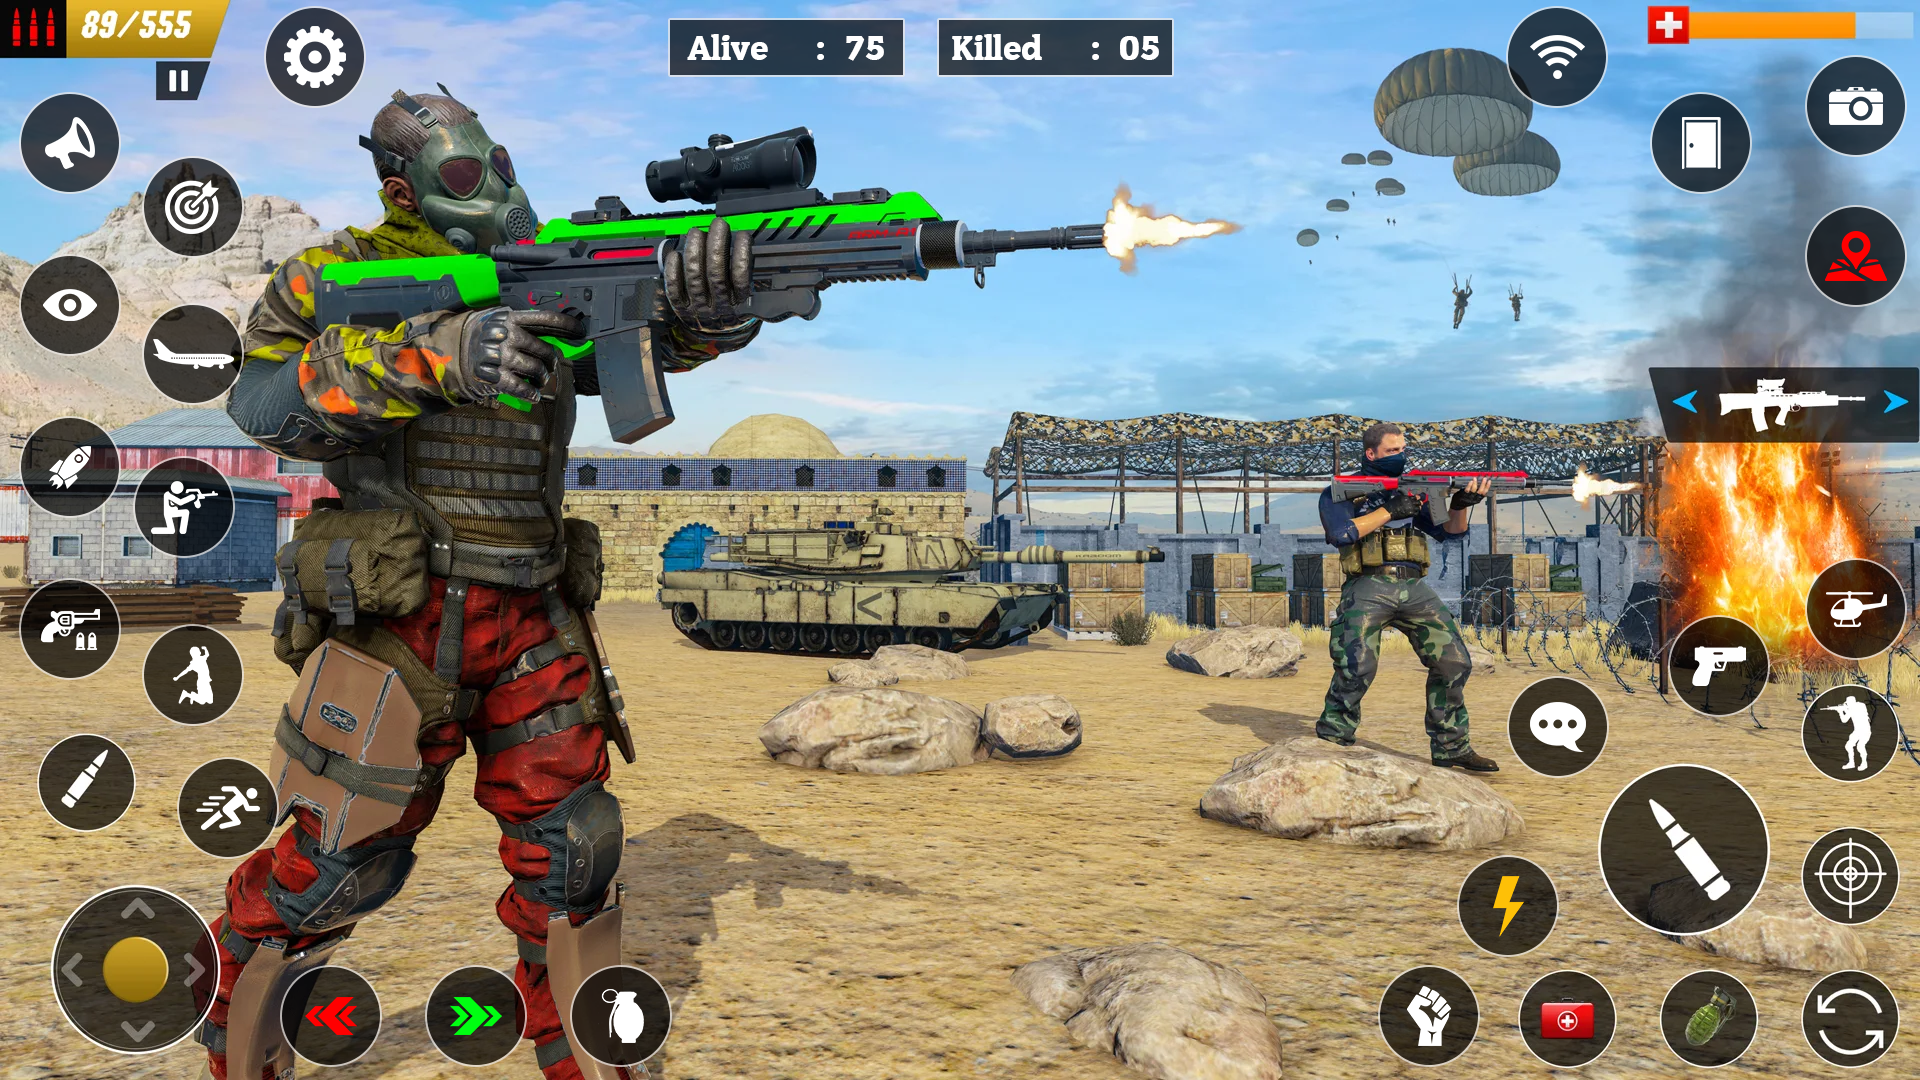 OG - Strike Force Online FPS Shooting Games Shooter with